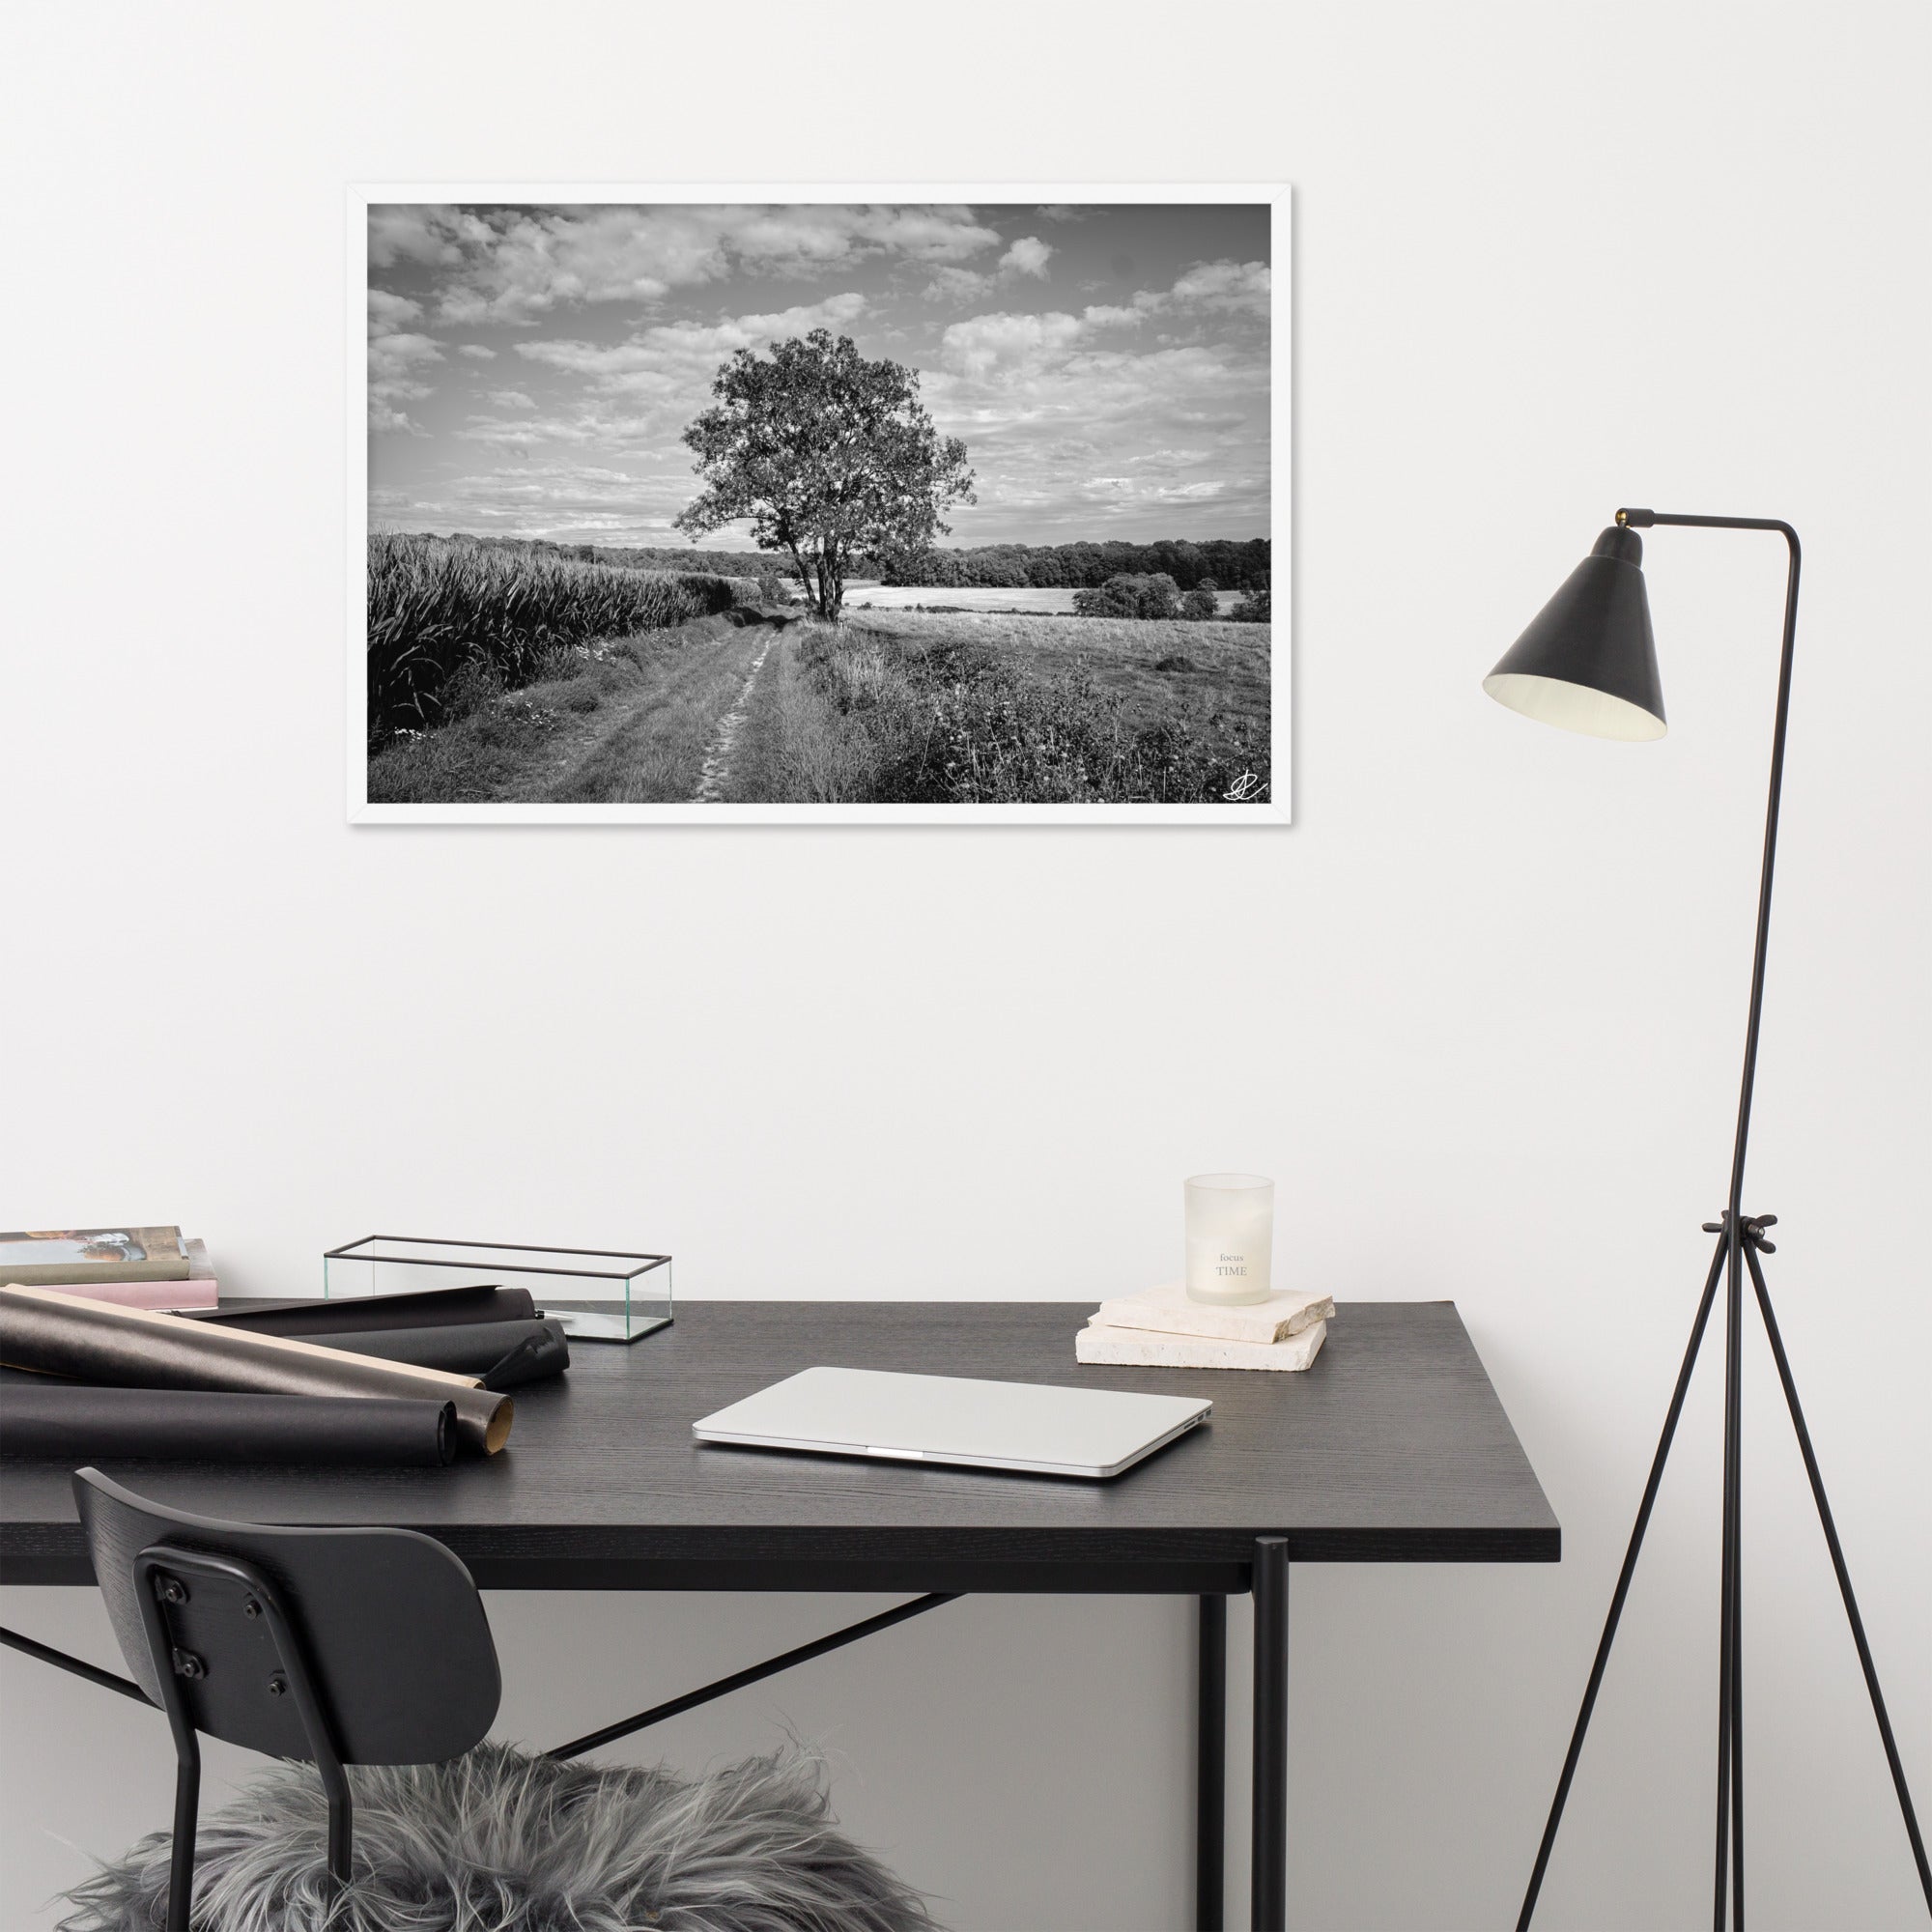 Poster en noir et blanc 'Le Grand Arbre', mettant en vedette un arbre robuste et serein au bord d'un champ ouvert, photographié de manière artistique par Ilan Shoham, offrant une présence apaisante et majestueuse à votre espace.